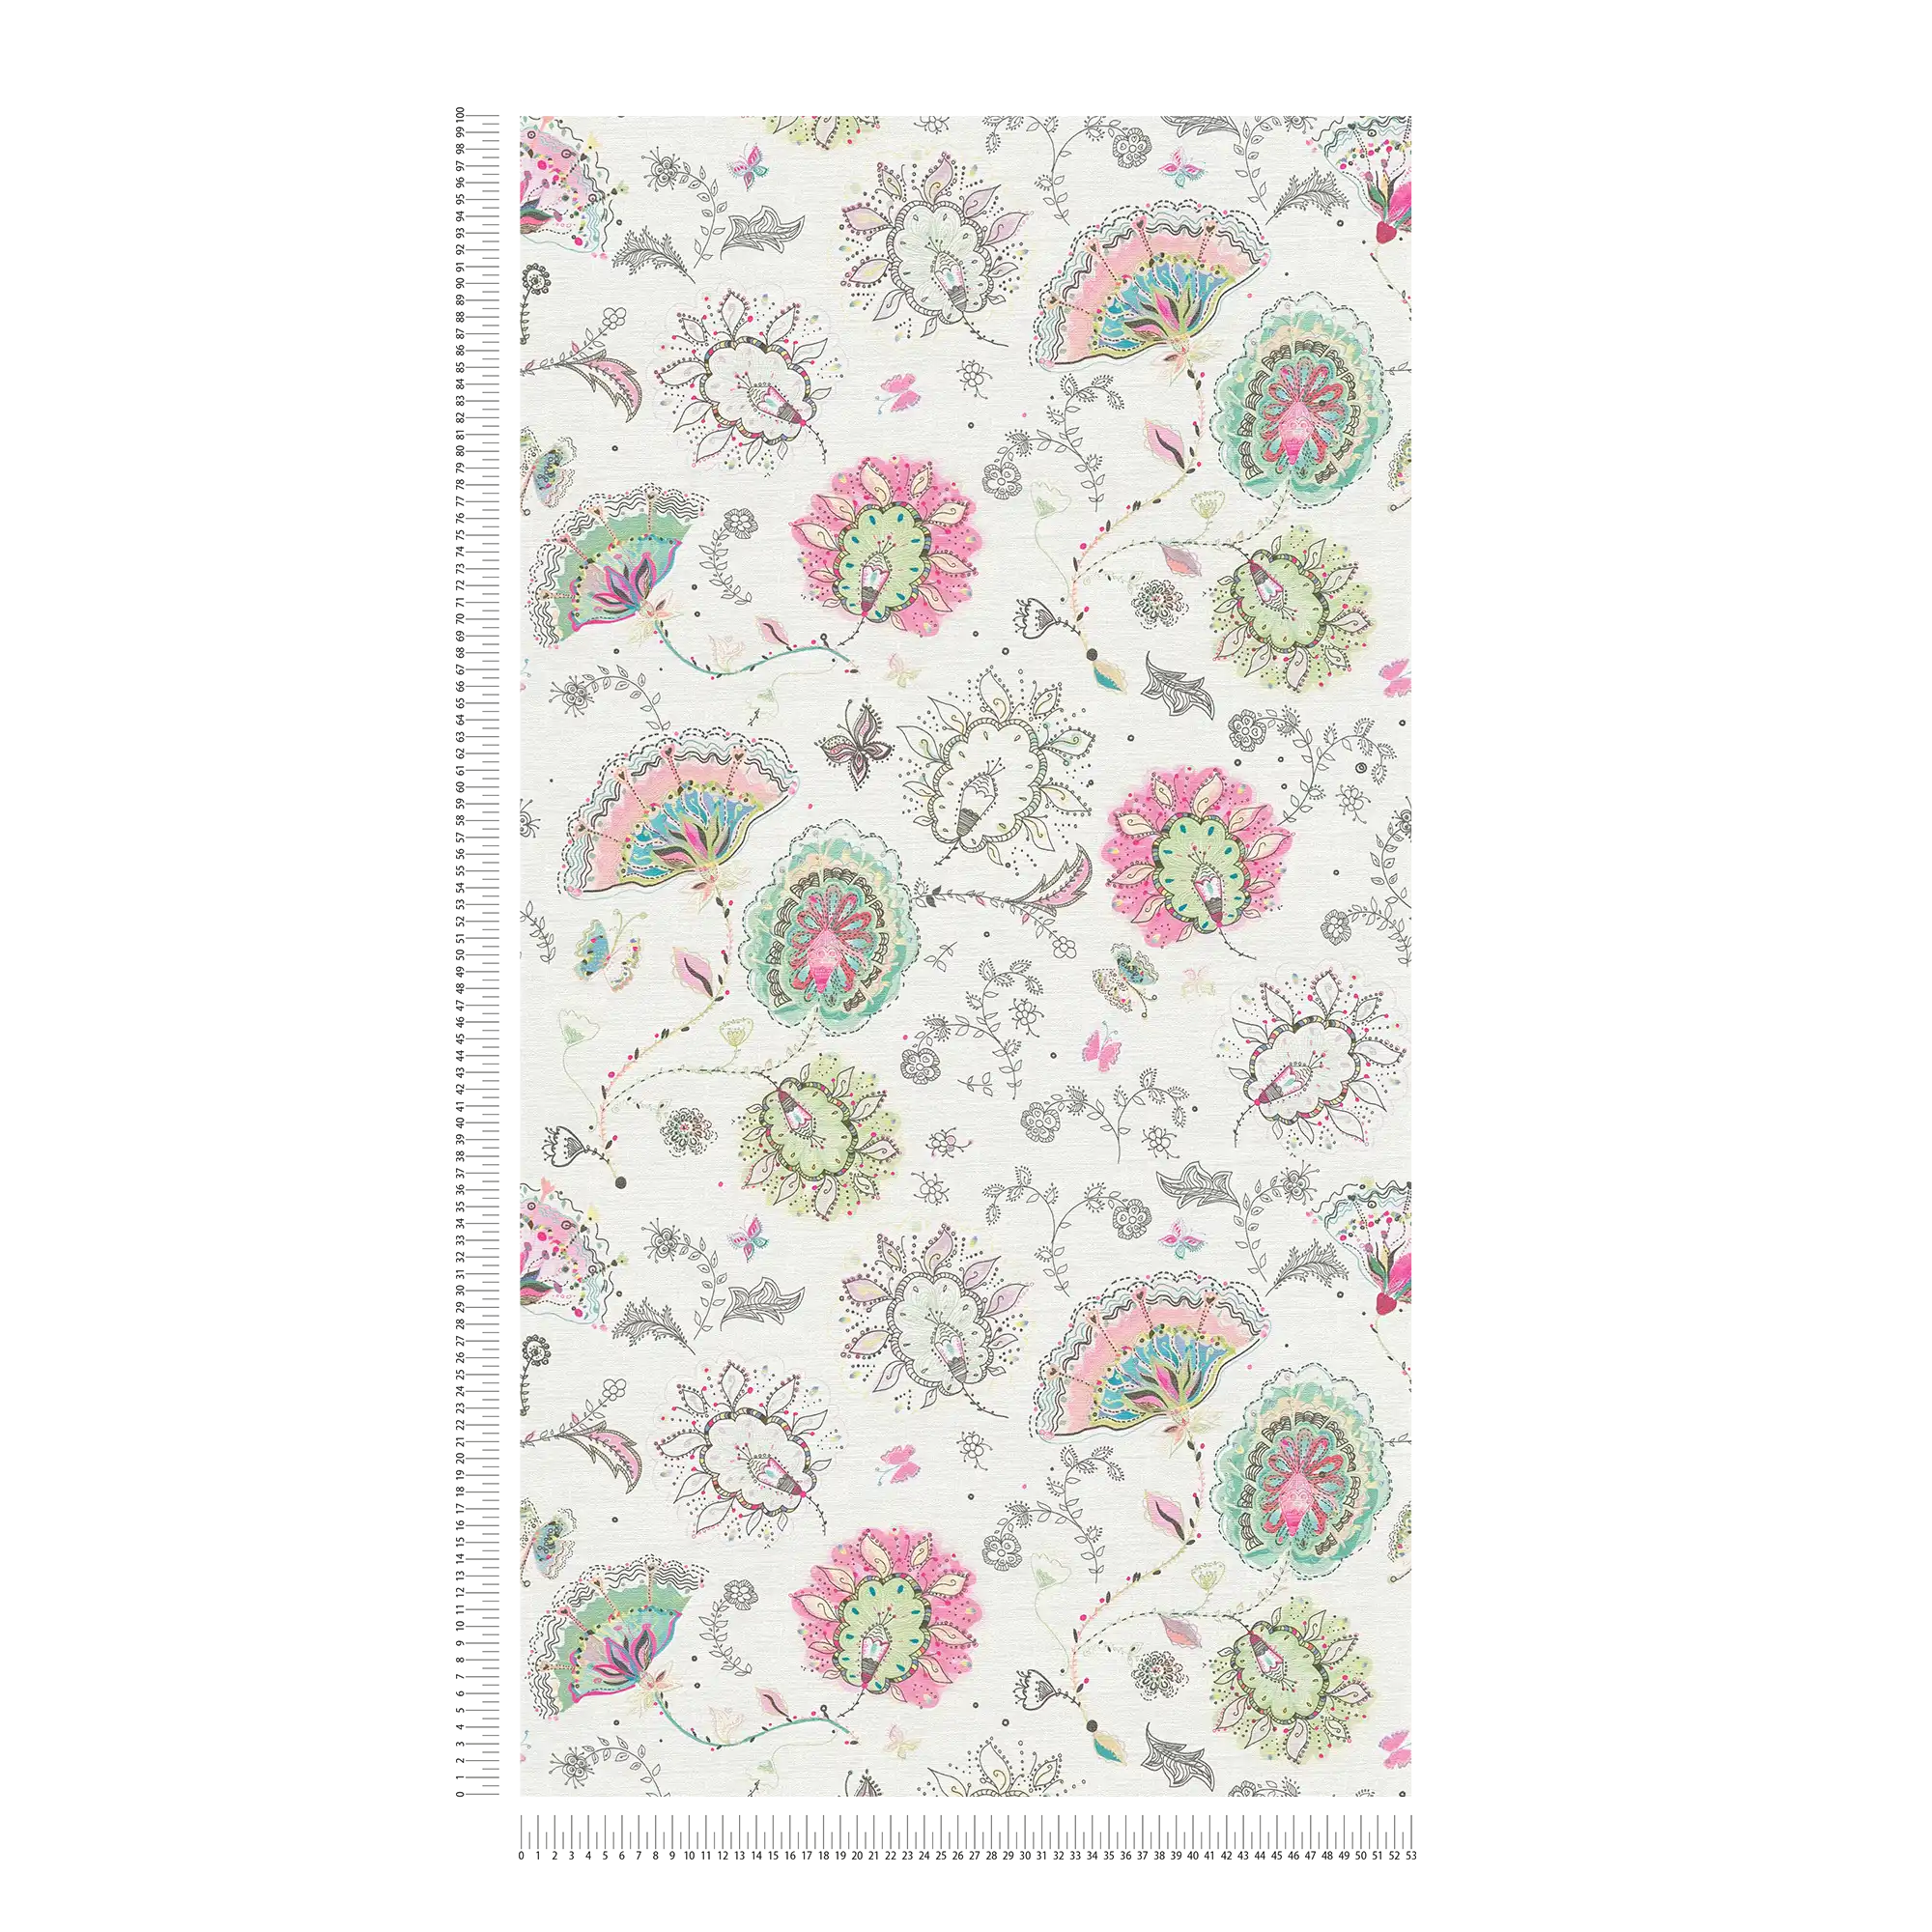             Blumenmuster Tapete in kräftigen Farben – Creme, Grün, Rosa
        